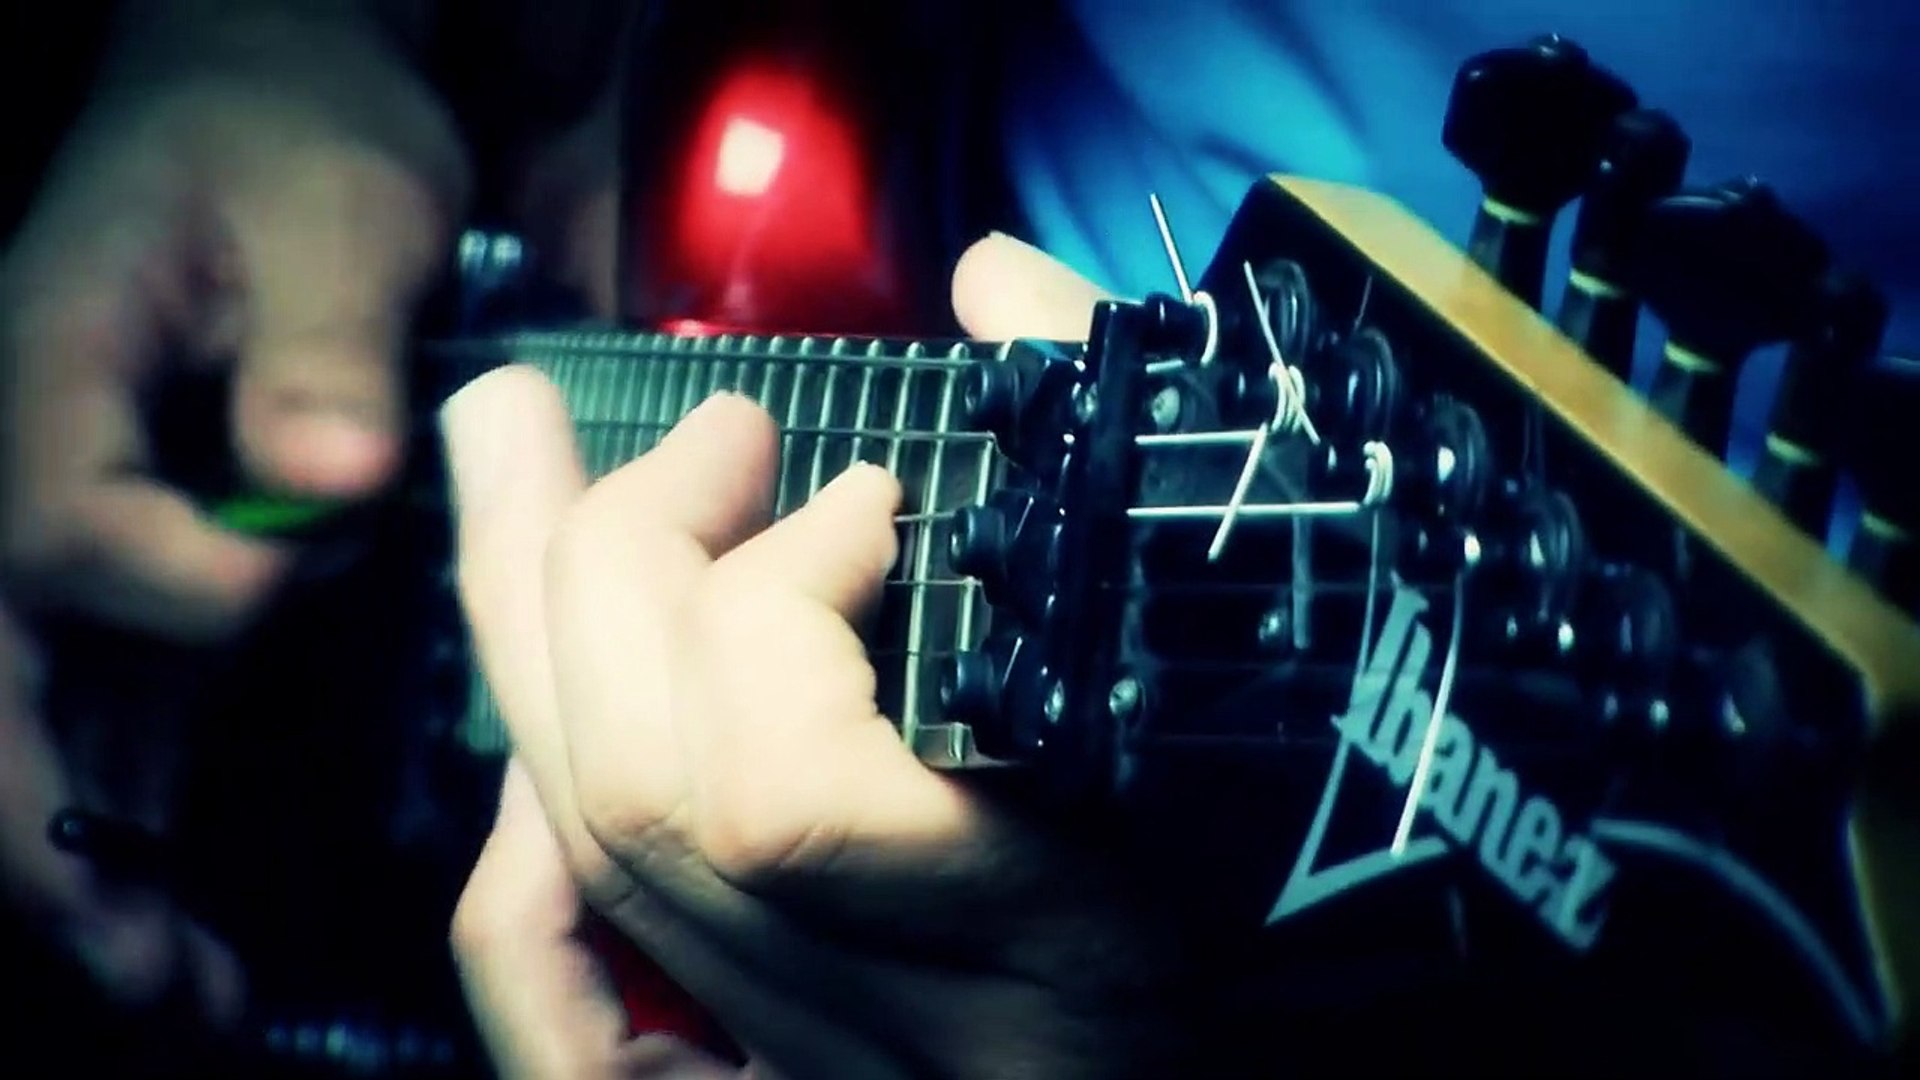 Gitana - Mariano Franco (Canción instrumental de guitarra eléctrica) -  Vídeo Dailymotion